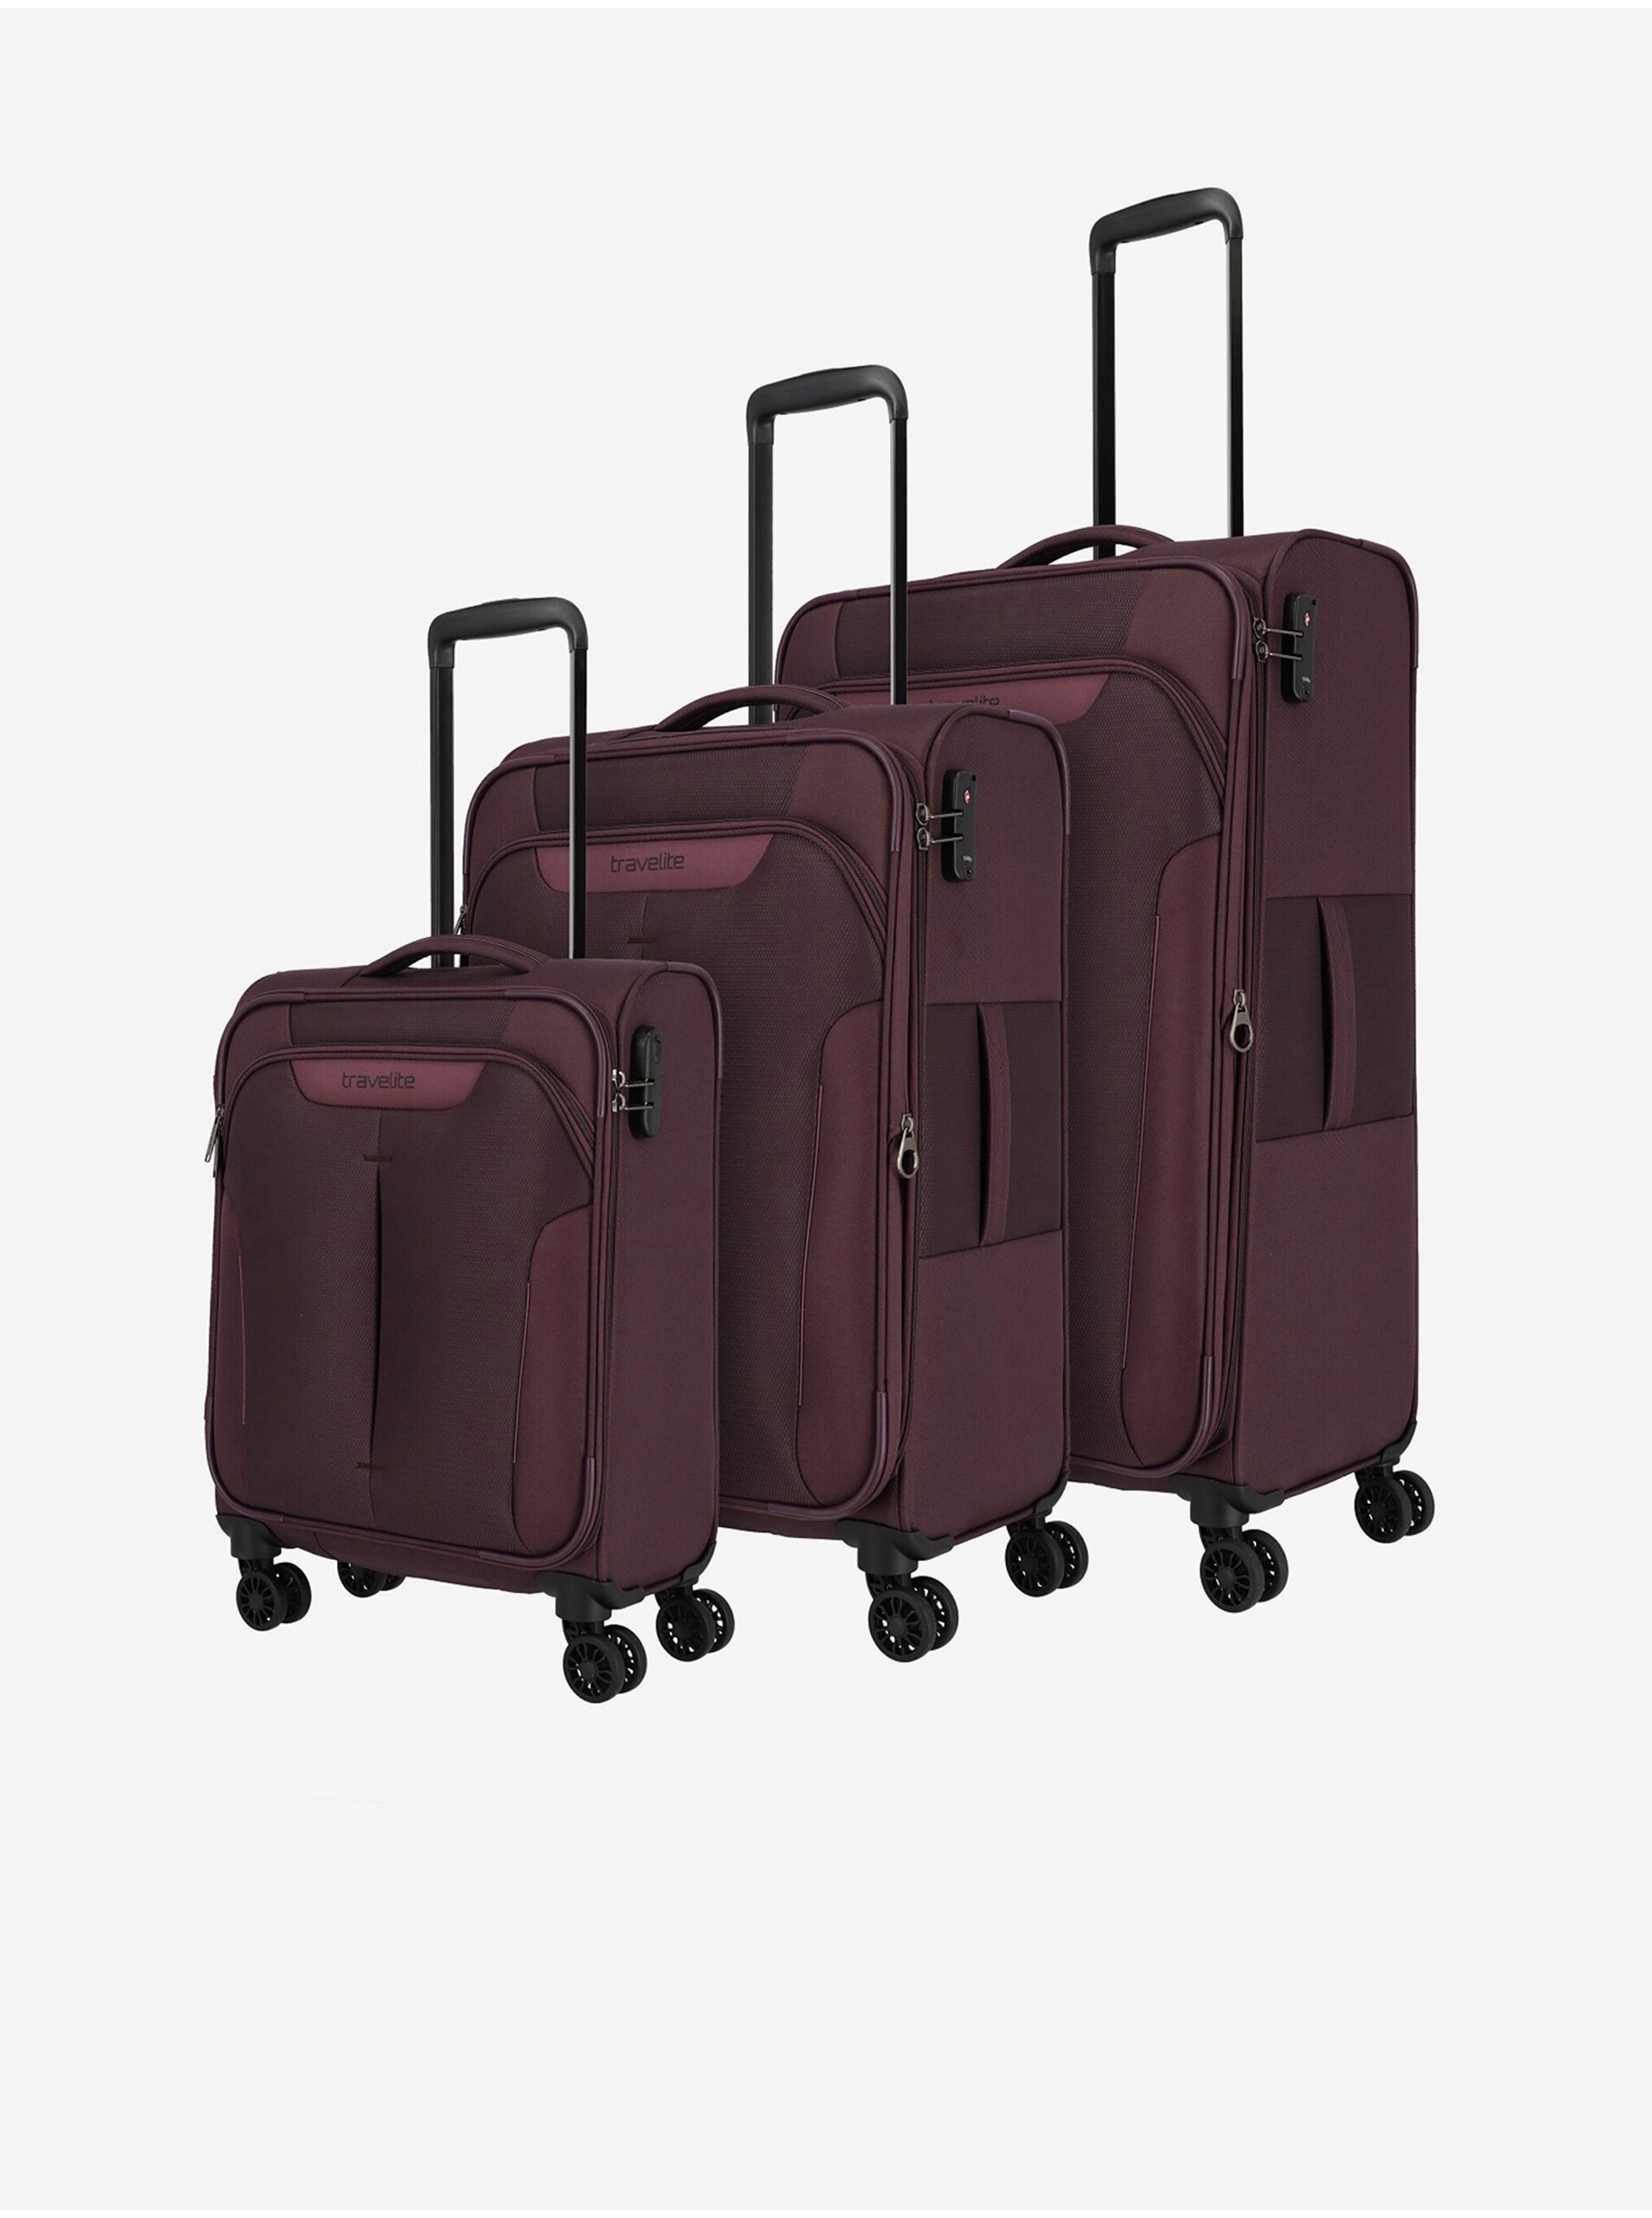 Lacno Súprava troch cestovných kufrov vo fialovej farbe Travelite Croatia S,M,L